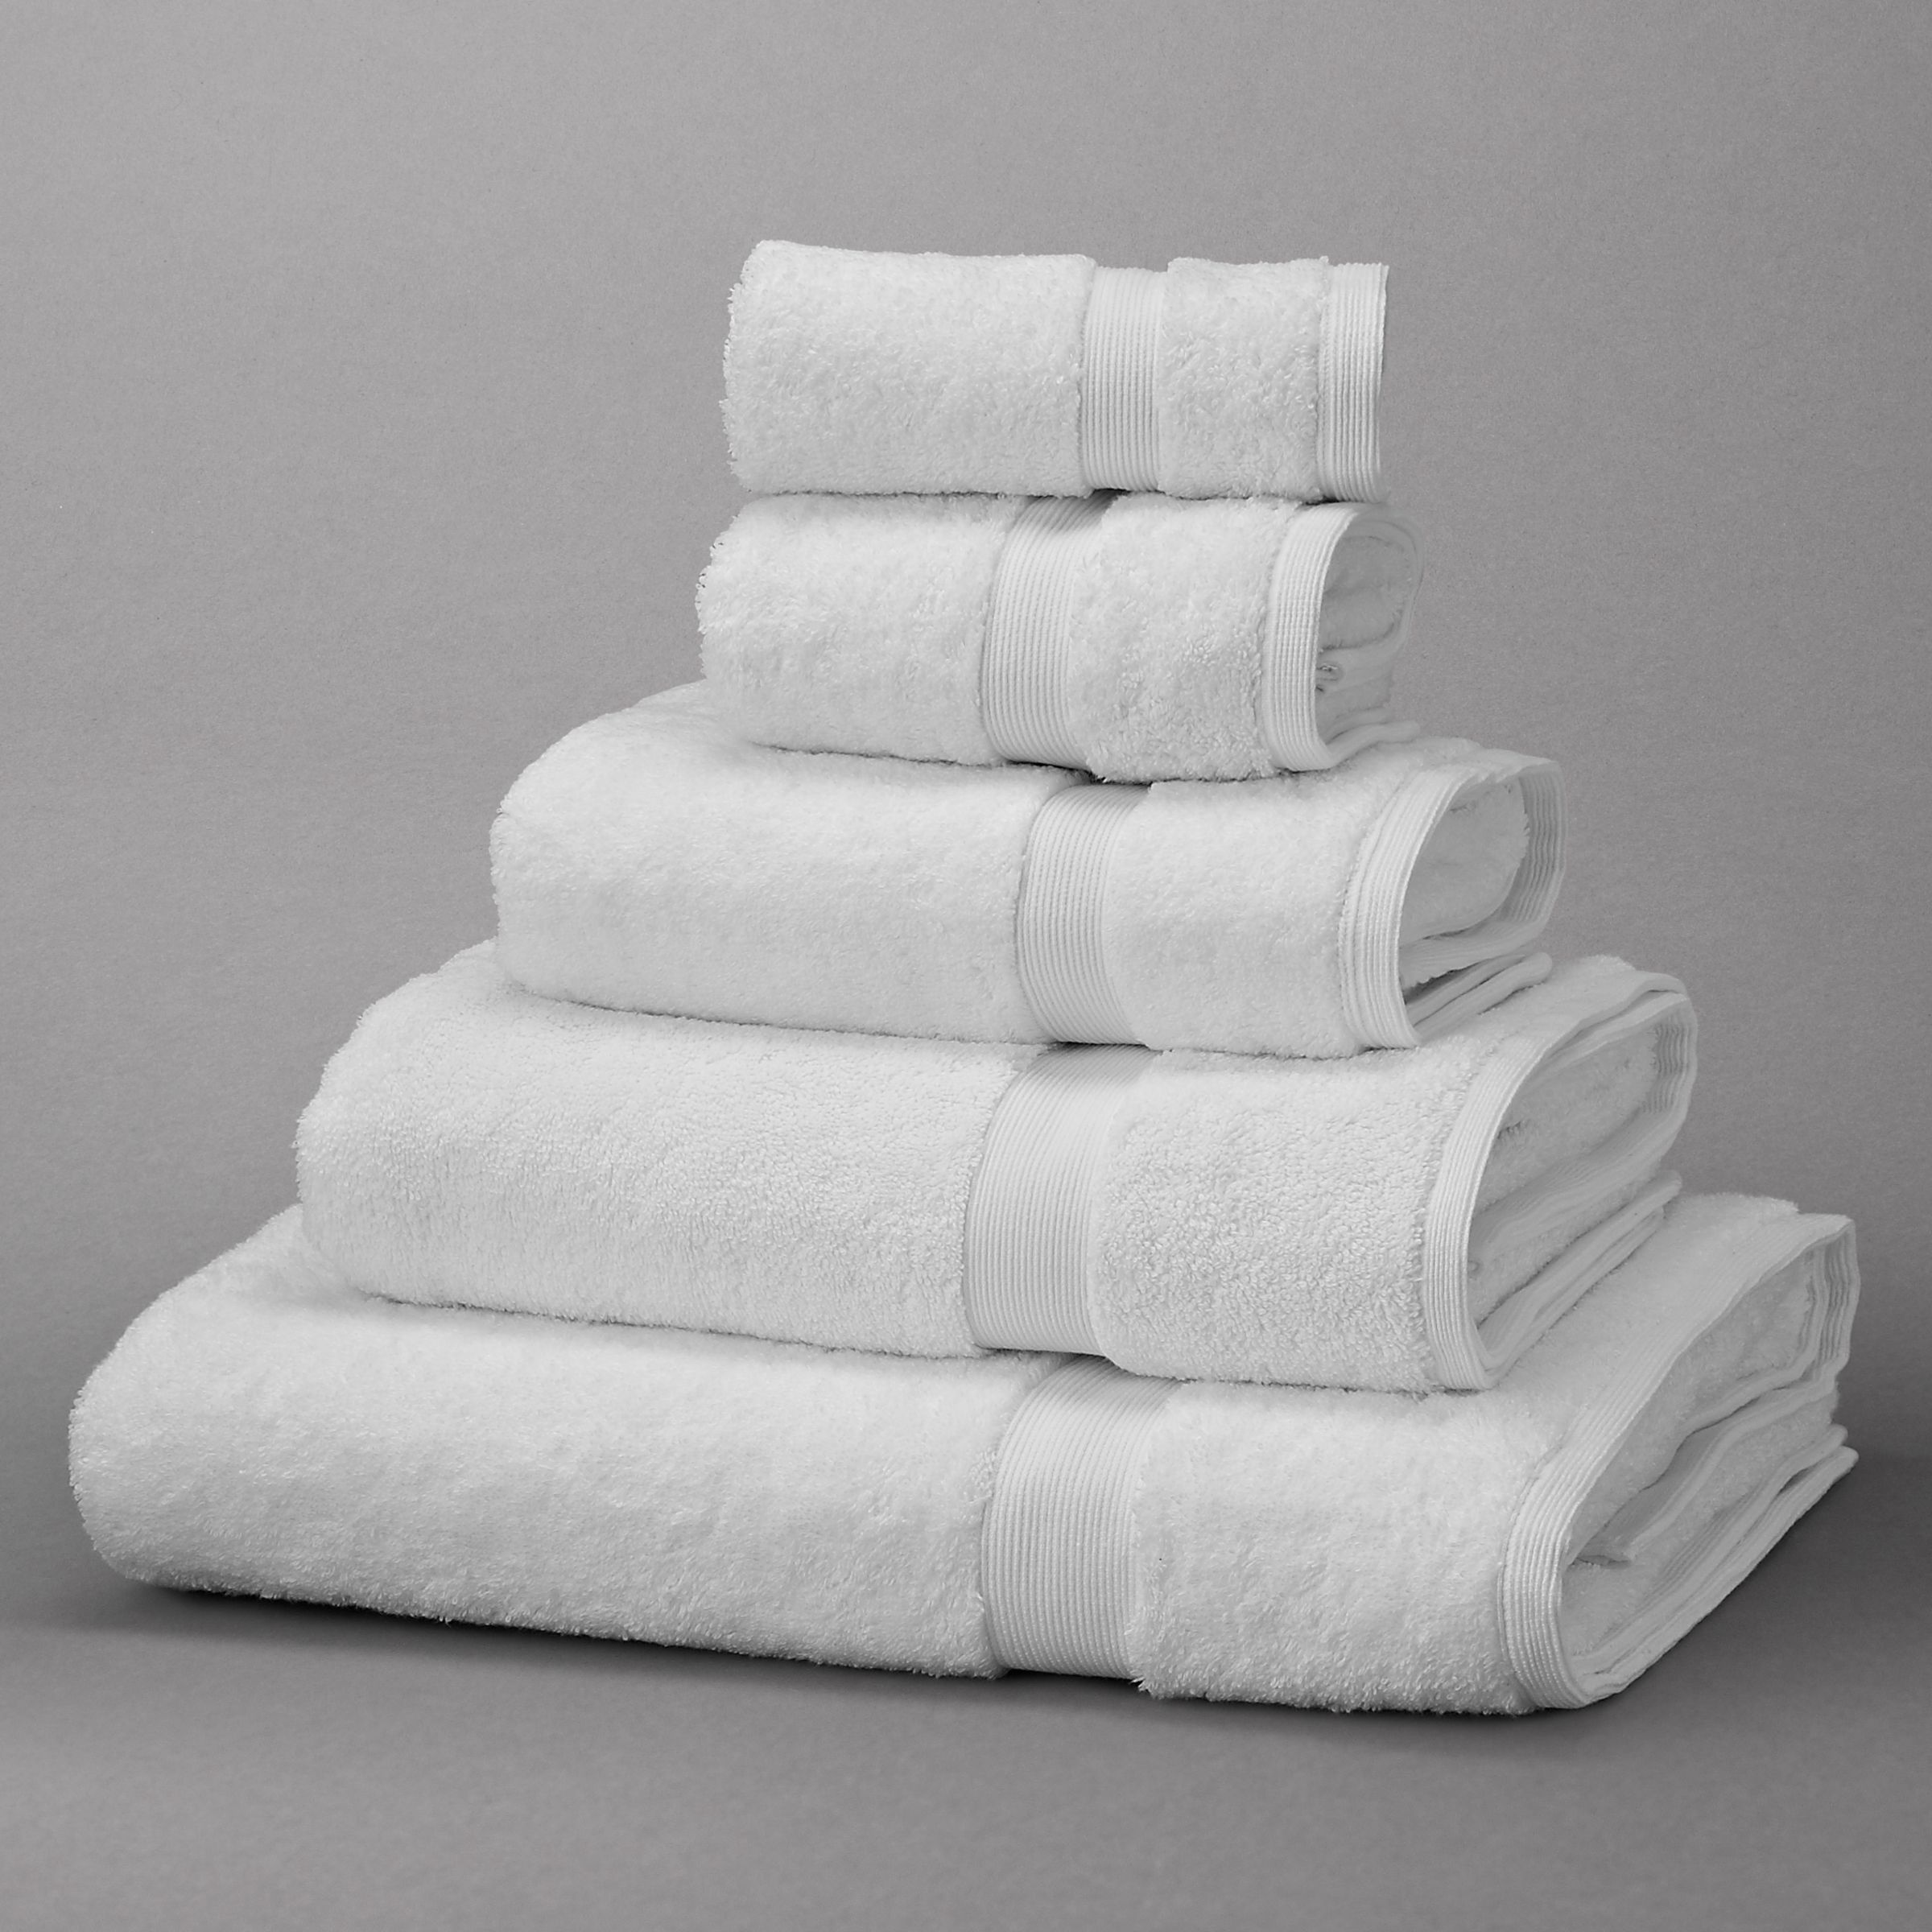 hugo boss bath towels